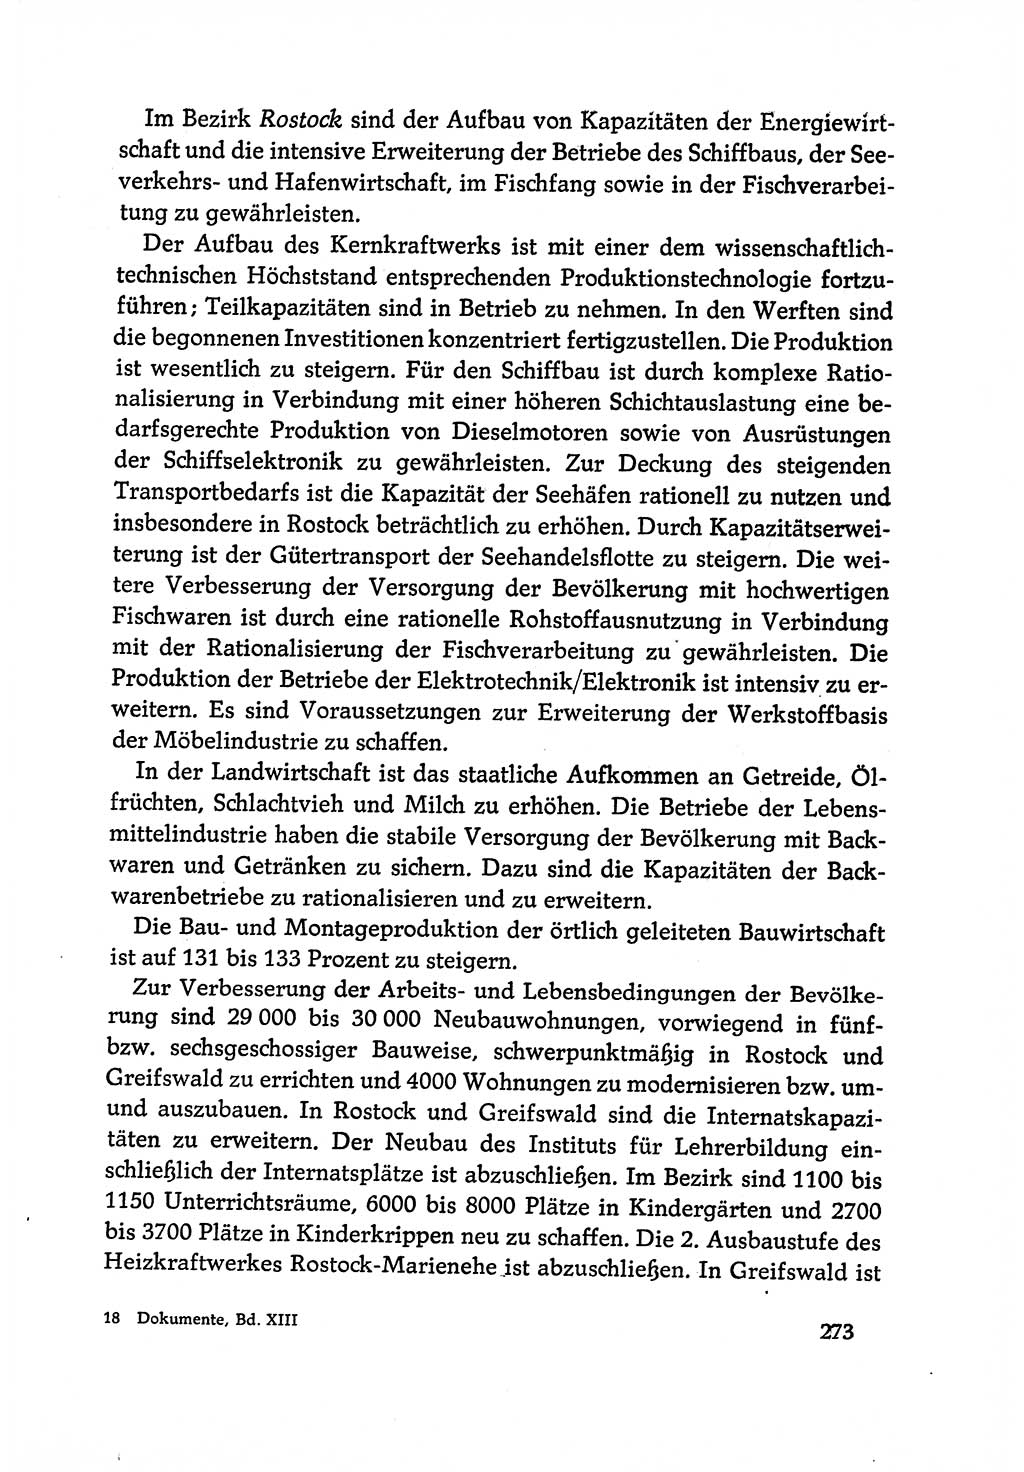 Dokumente der Sozialistischen Einheitspartei Deutschlands (SED) [Deutsche Demokratische Republik (DDR)] 1970-1971, Seite 273 (Dok. SED DDR 1970-1971, S. 273)